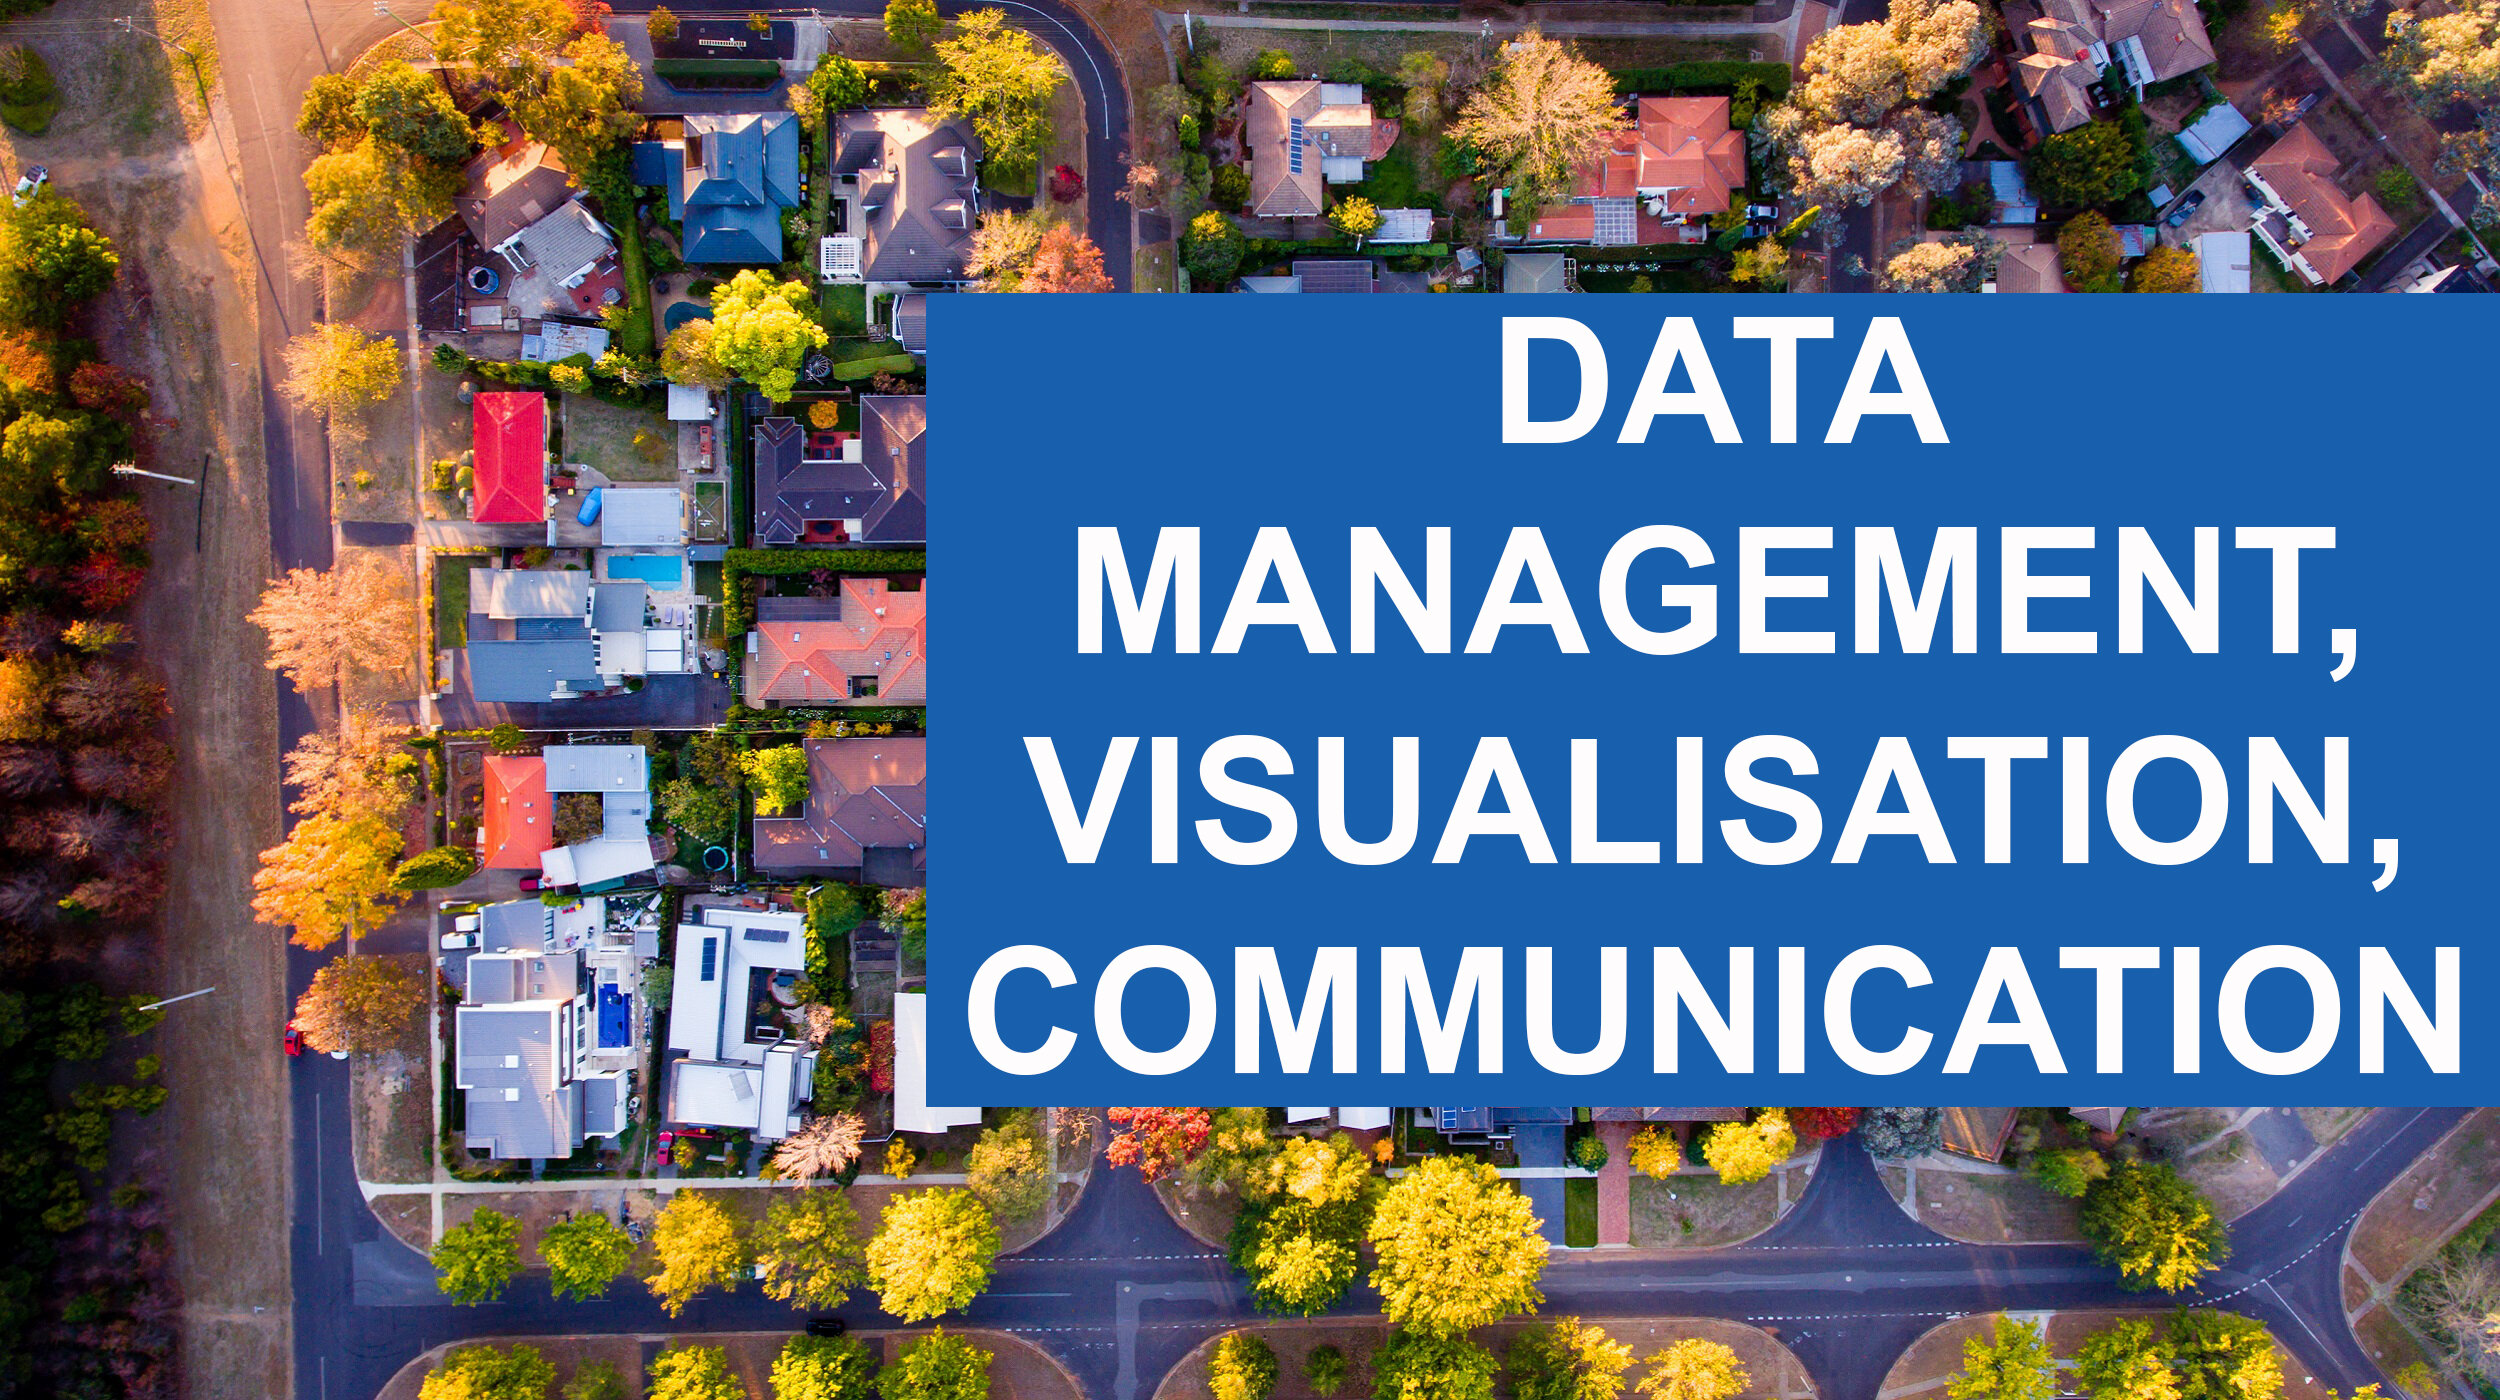 Data Management, Visualisation and Communication